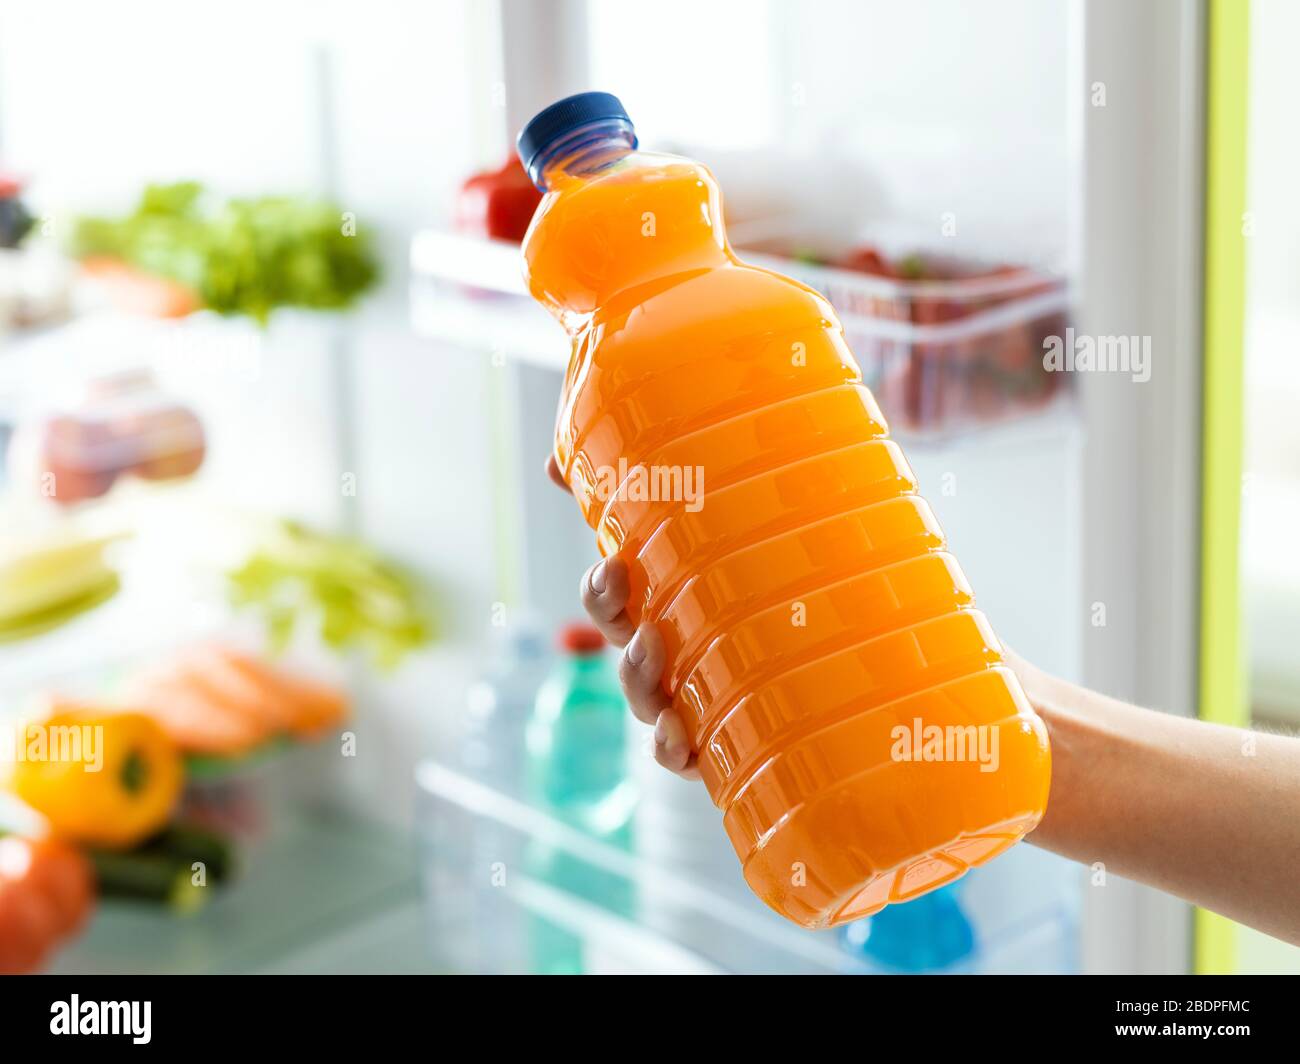 Свежевыжатый сок в холодильнике. Бутылка Fresh Juice. Сок в холодильнике. Апельсиновый сок в бутылке. Бутылка с апельсиновым соком пластиковая фотосессия.